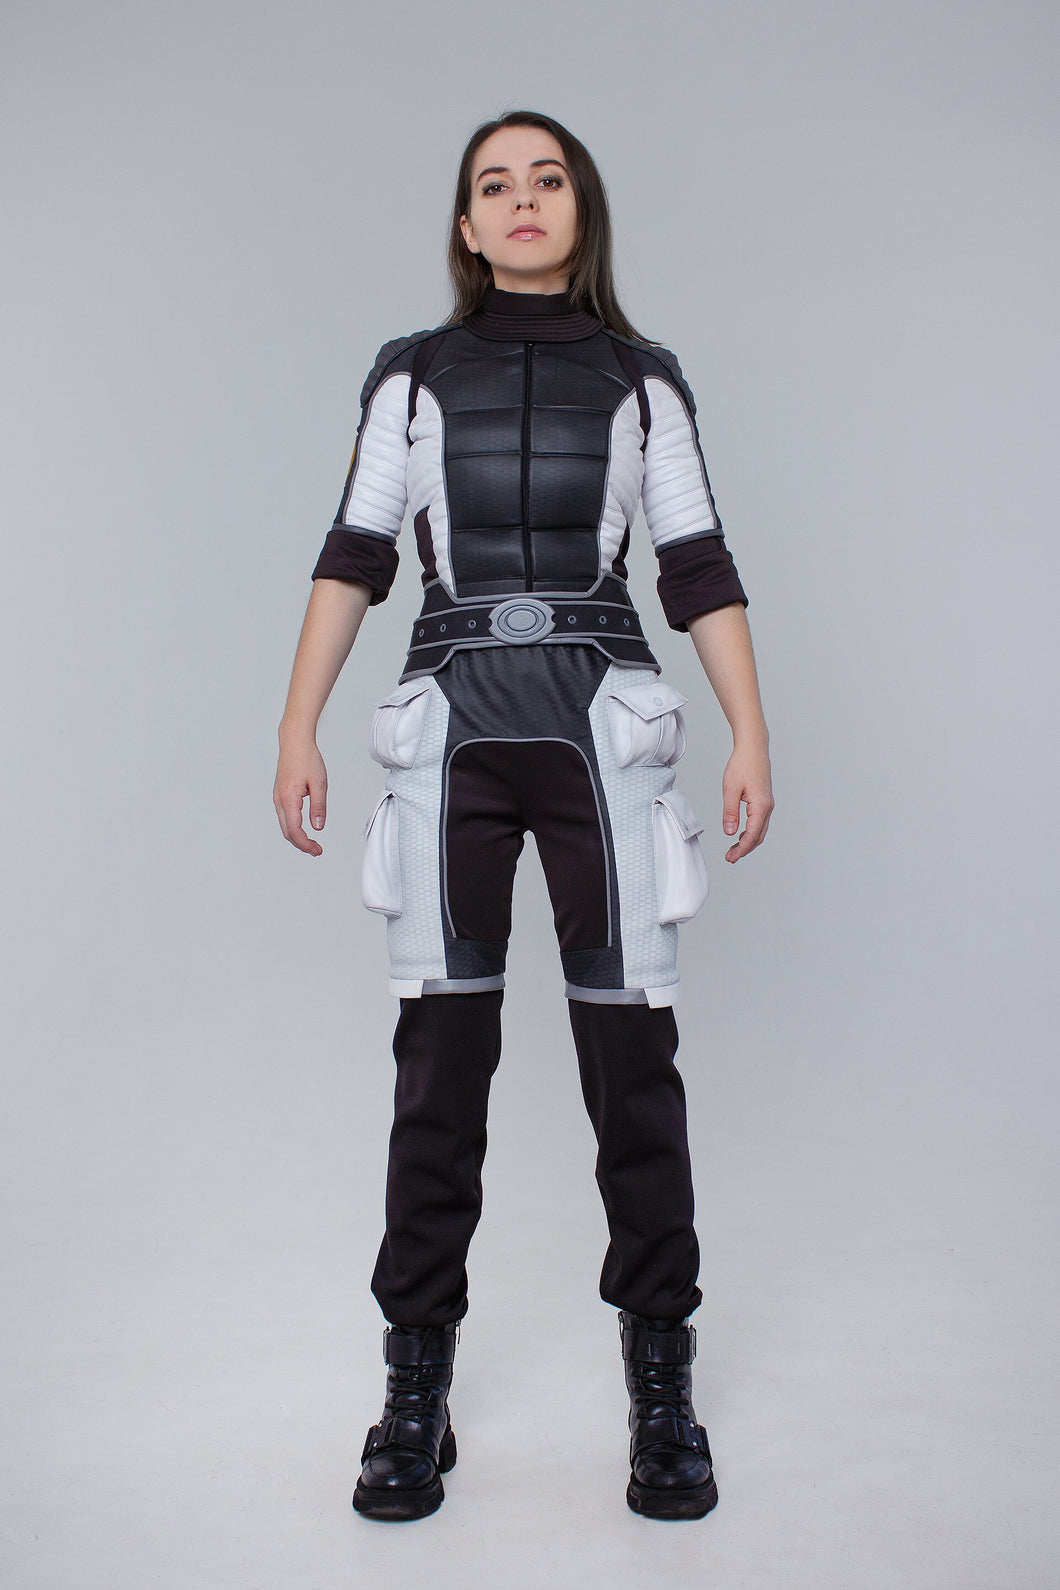 Mass Effect women cosplay uniform Female Shepard Alliance cosplay Video game cosplay female alliance cosplay Ashley uniform cosplay